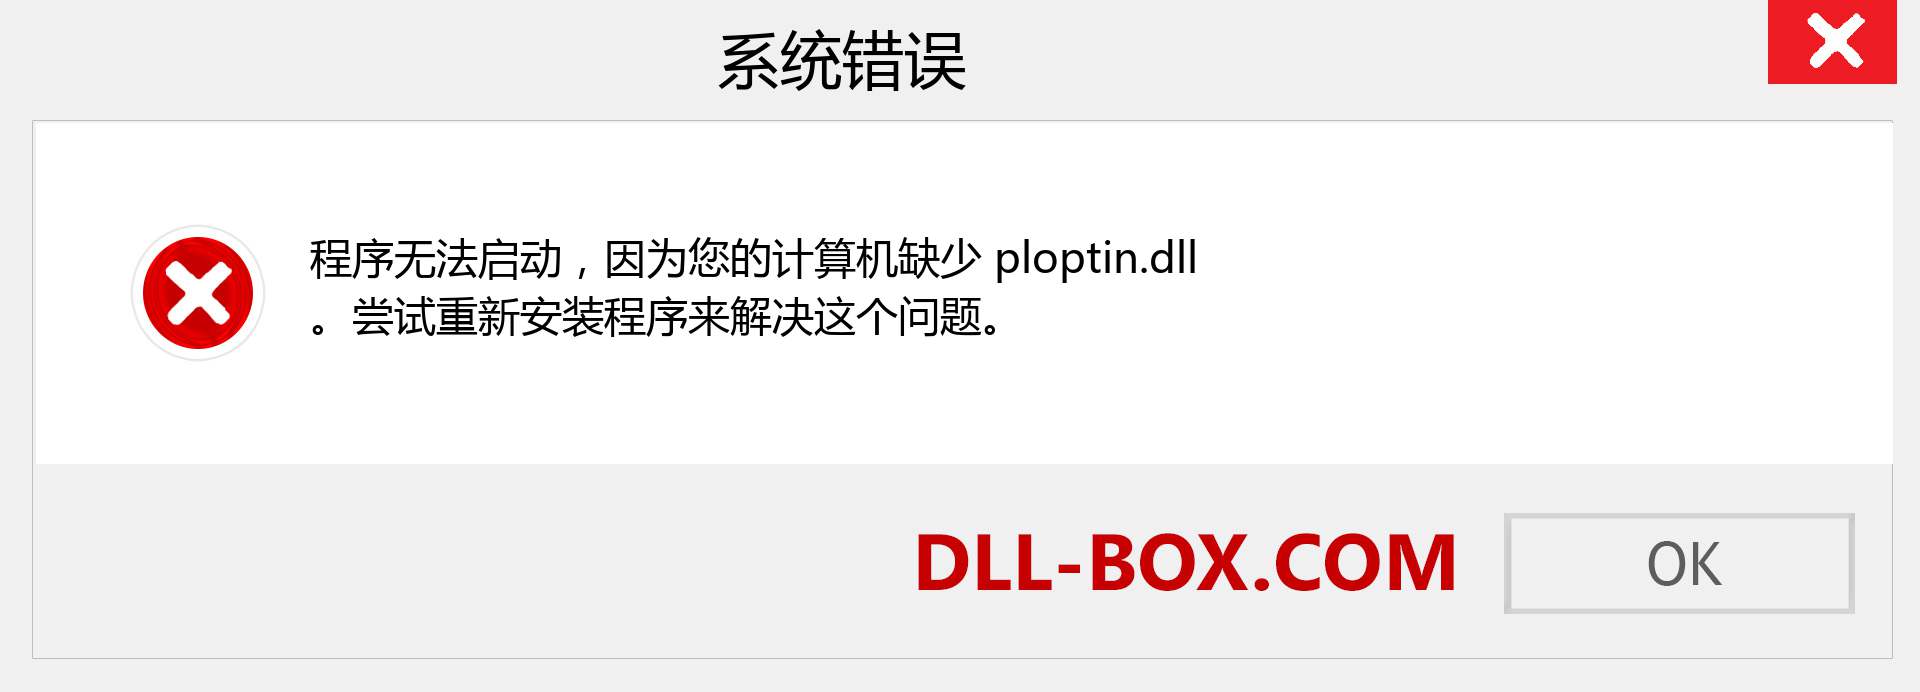 ploptin.dll 文件丢失？。 适用于 Windows 7、8、10 的下载 - 修复 Windows、照片、图像上的 ploptin dll 丢失错误